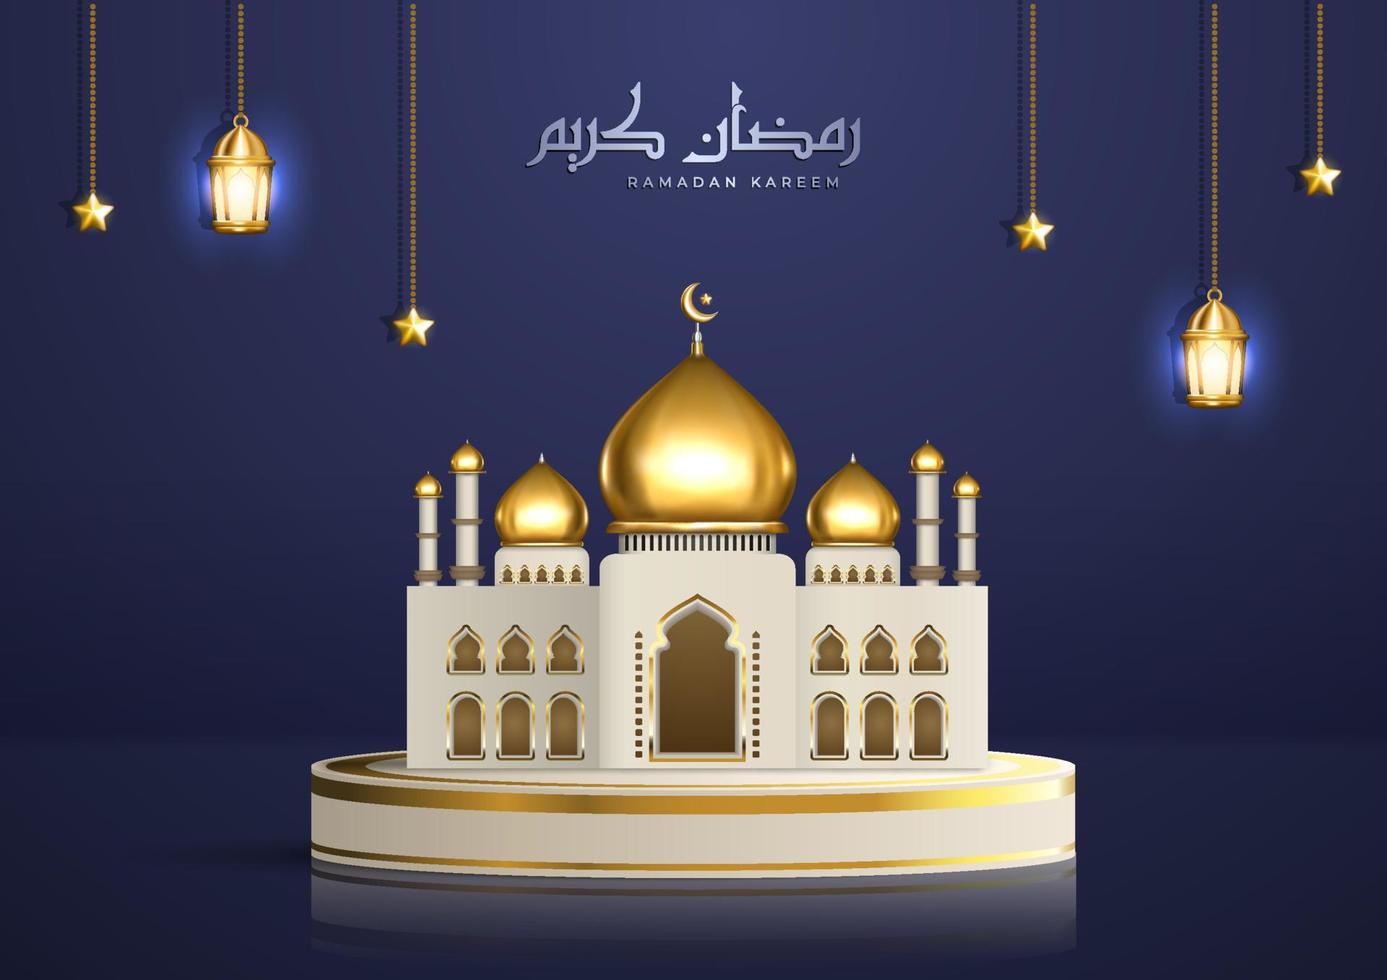 realistisk islamisk illustration med arabisk kalligrafi och gyllene moské på produktpodiet. ramadan kareem hälsning med hängande lyktor och stjärnor vektor